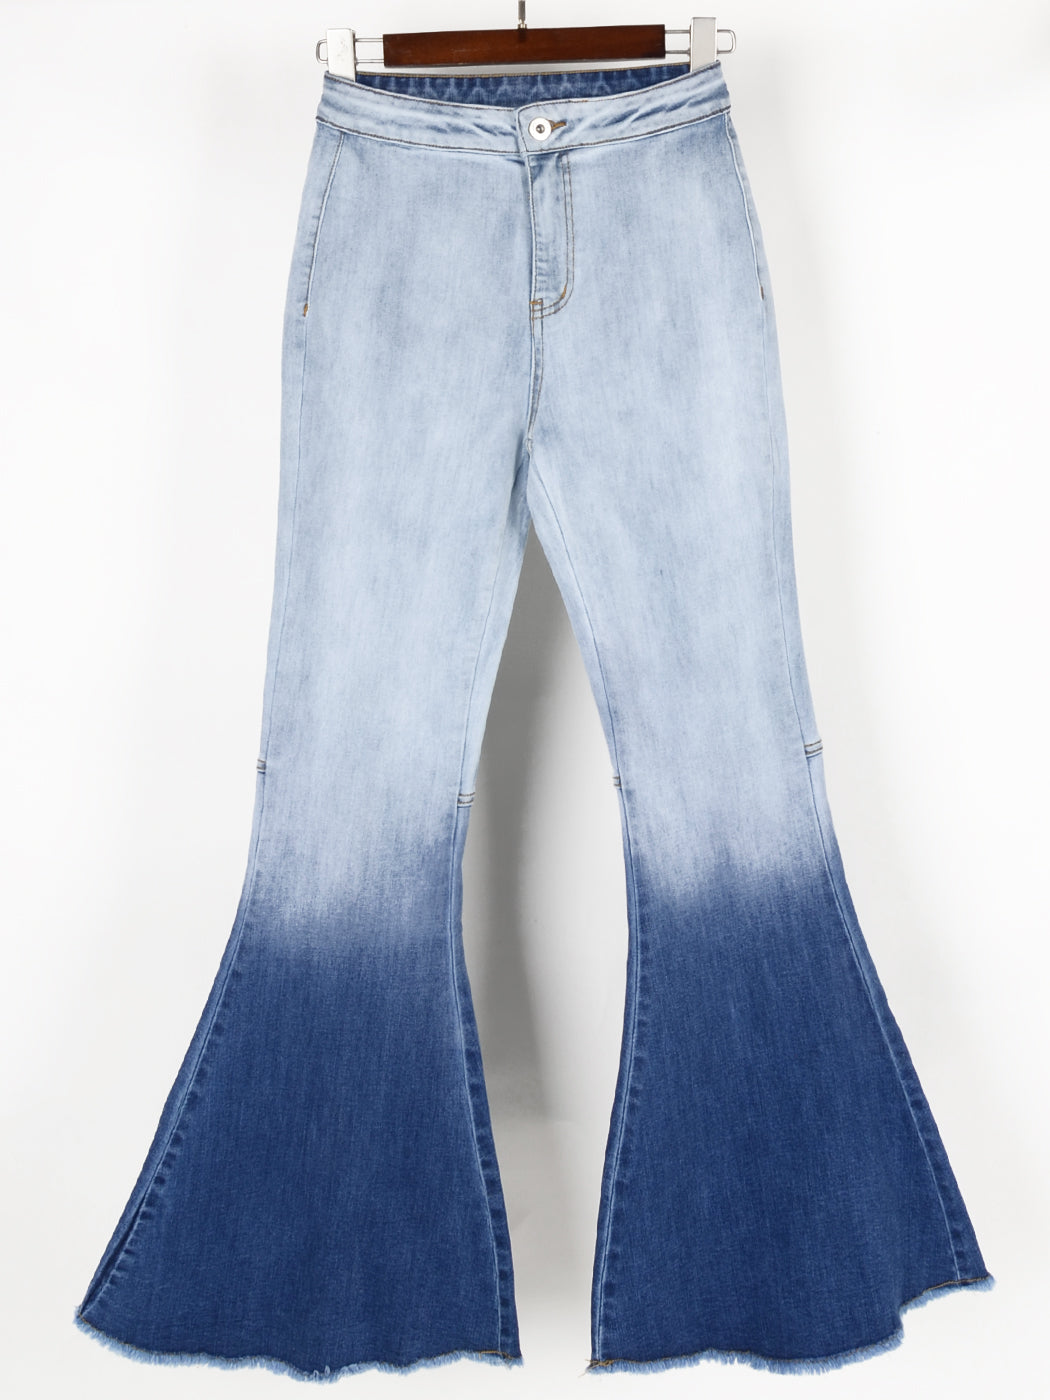 Bell Bottom High Waist Denim Jeans